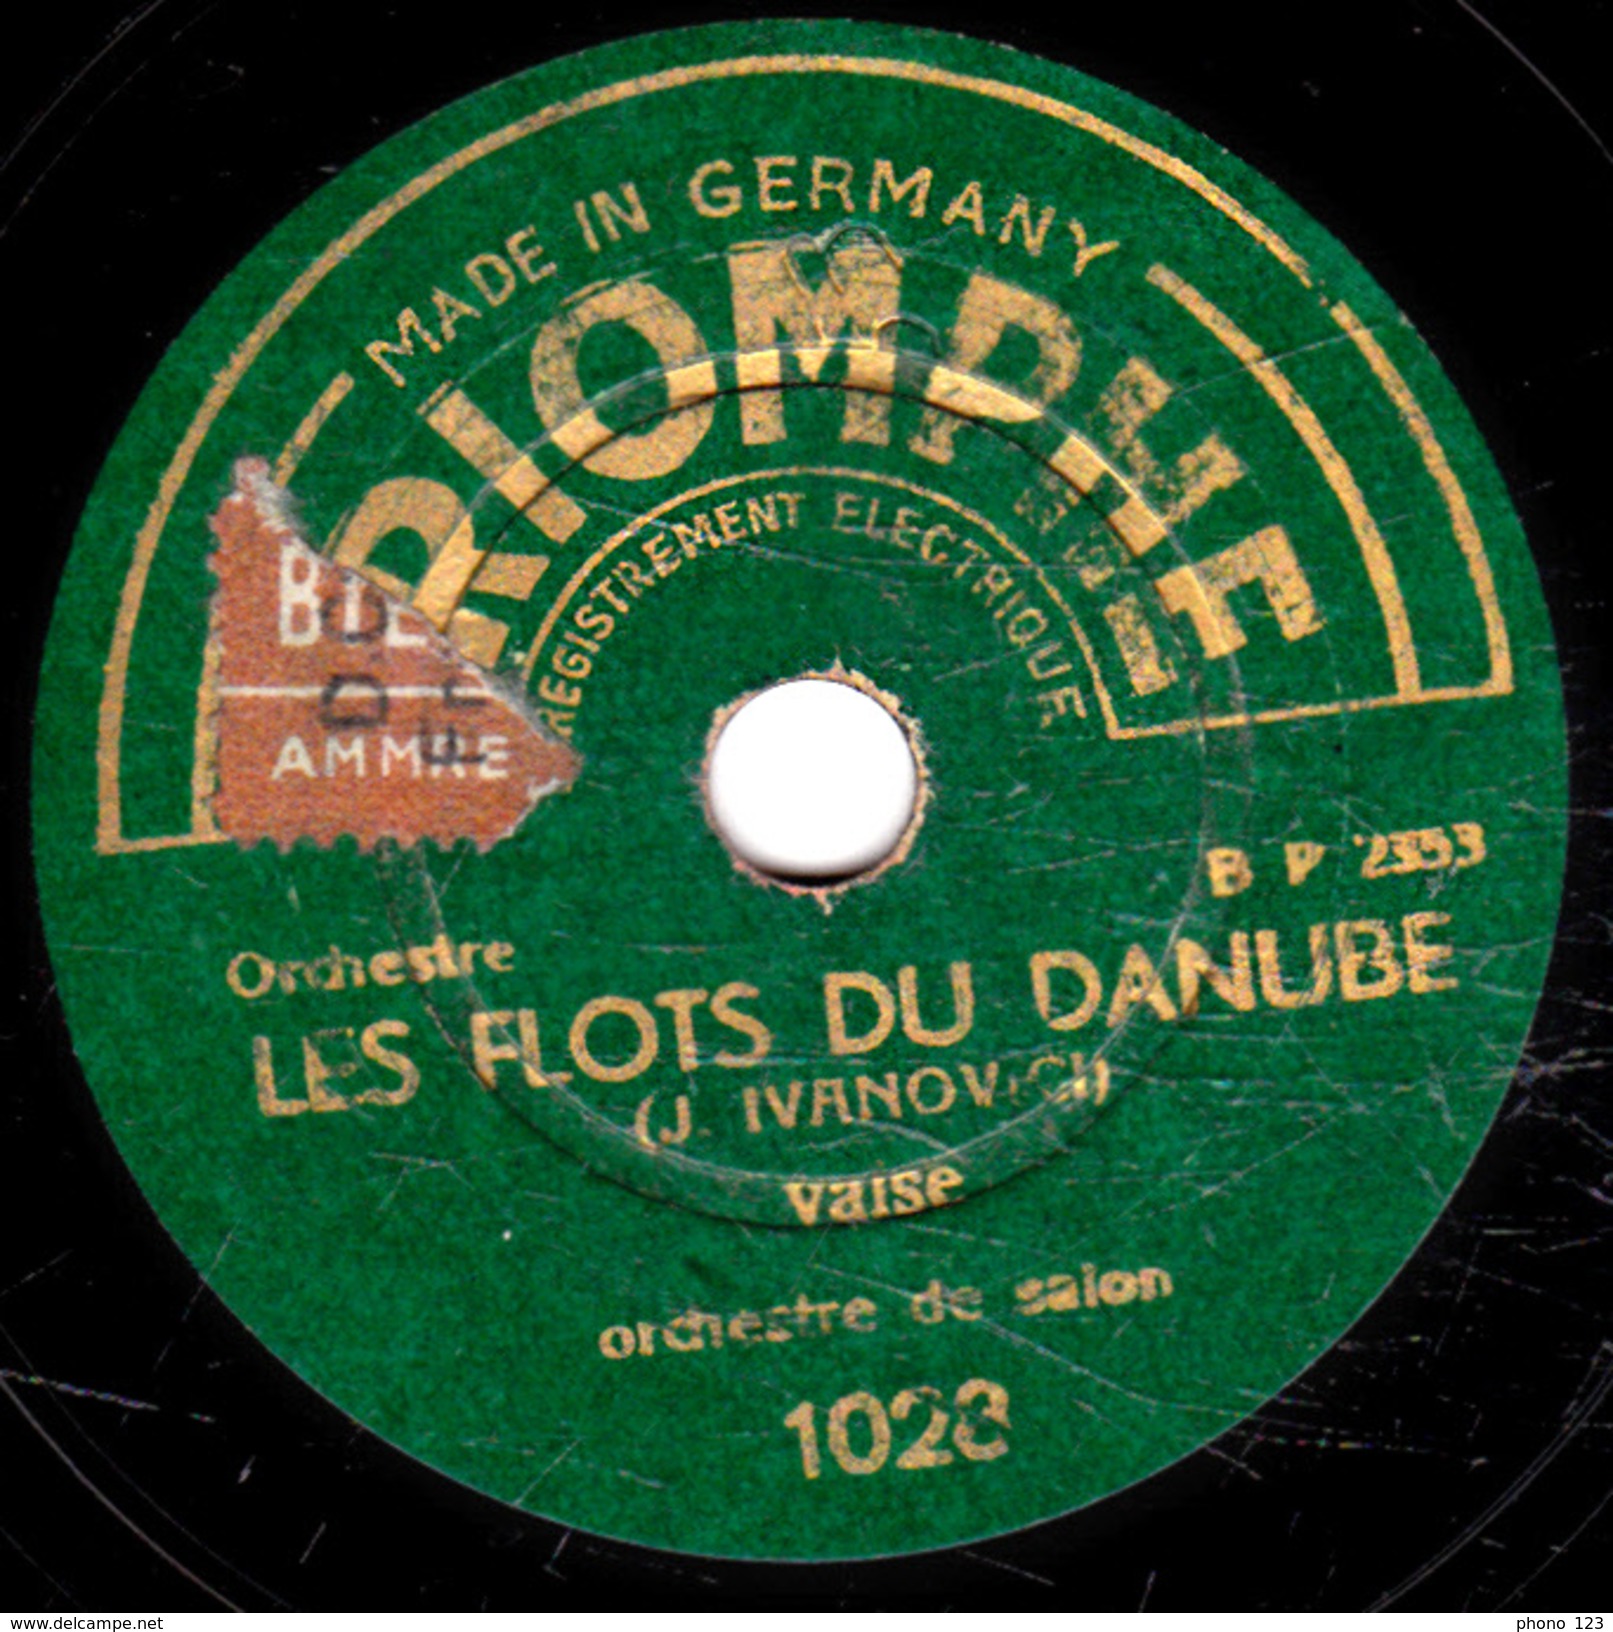 78 T. -  20 Cm - état  B -  Orchestre De Salon - LES FLOTS DU DANUBE - LA SCANDINAVE - 78 T - Disques Pour Gramophone